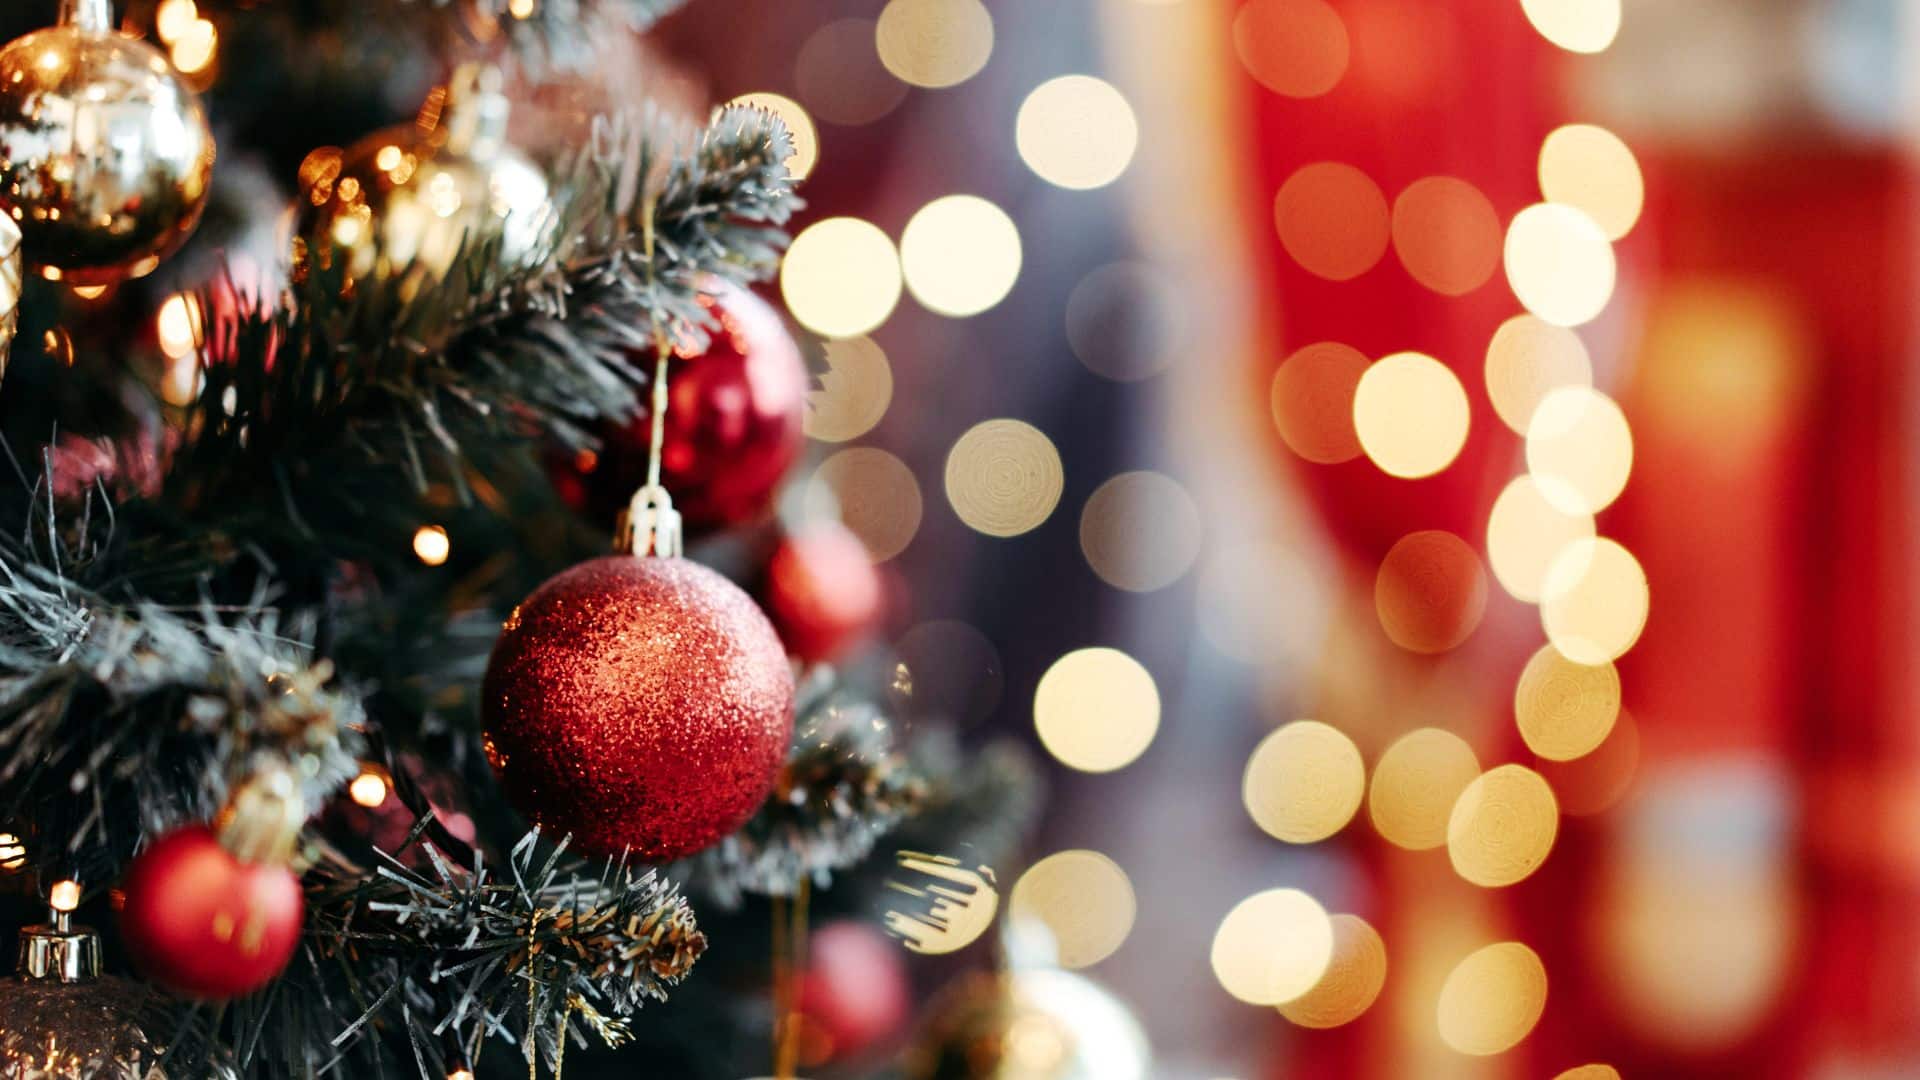 Séminaires Business Events vous présente un Sapin de Noël avec décoration